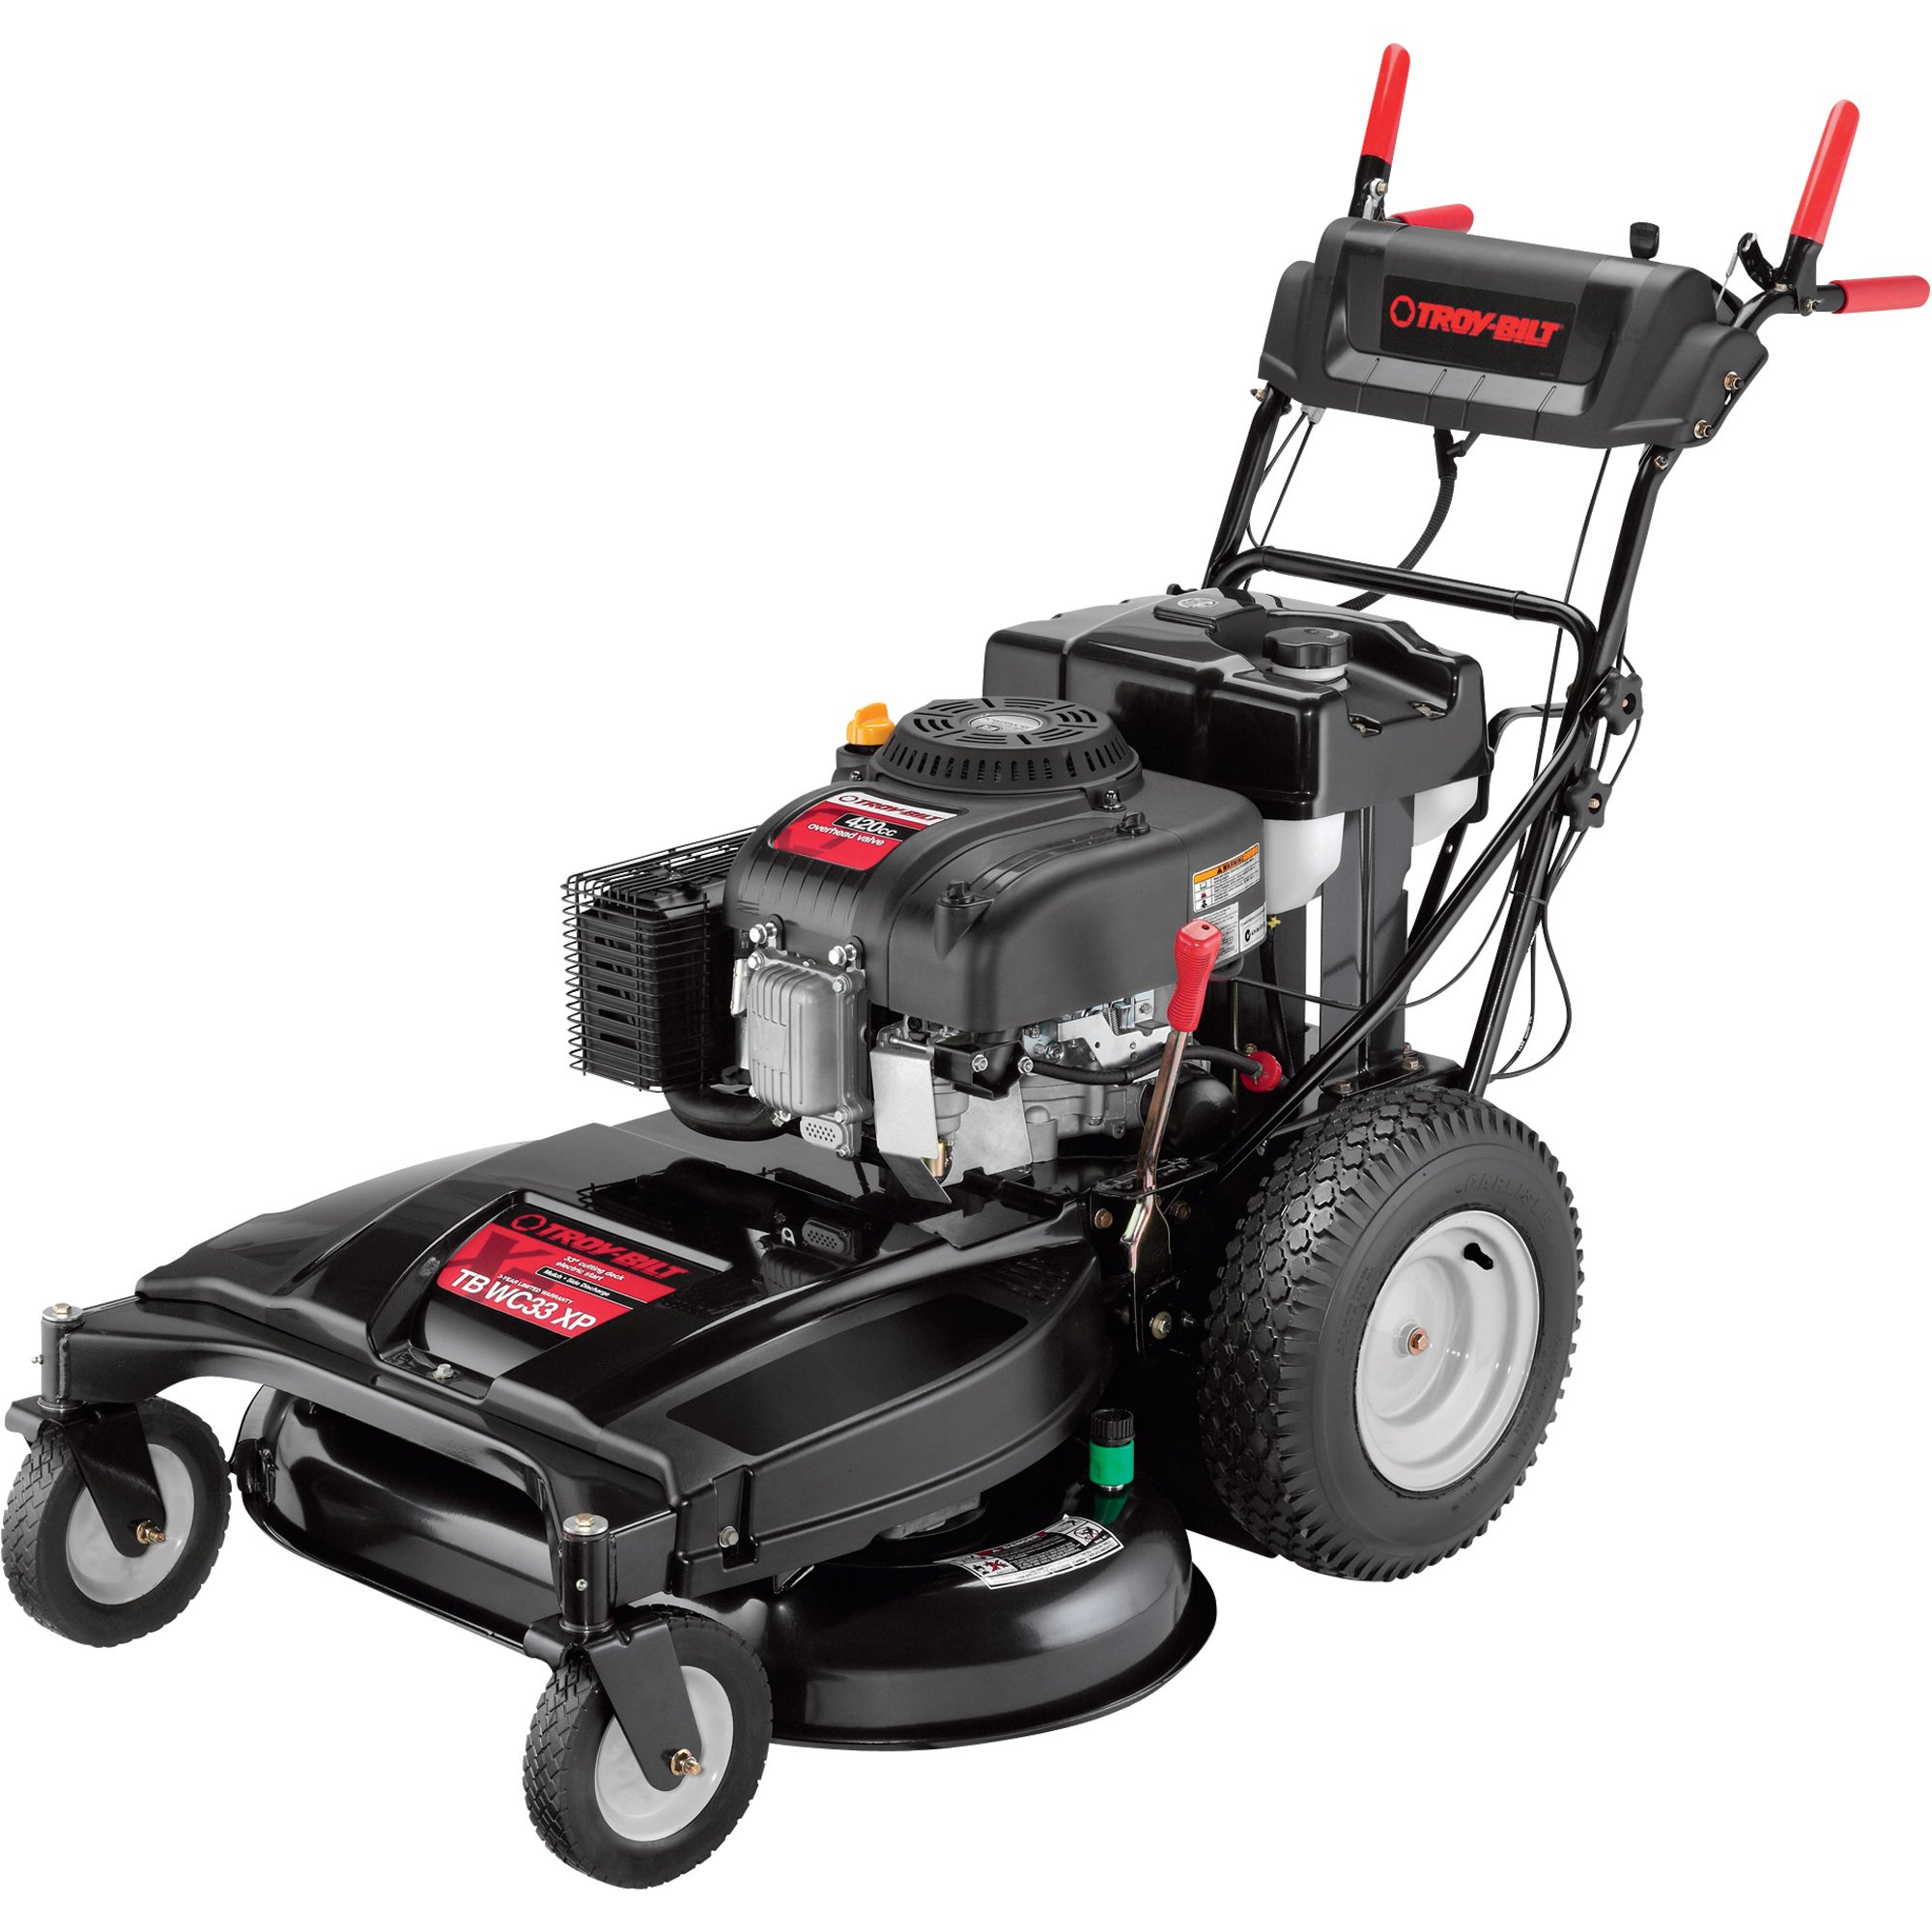 Troy-Bilt Self-Propelled Push Lawn Mower — 420cc Troy-Bilt Engine, 33in.  Cutting Deck, Model# 12AE76JU011